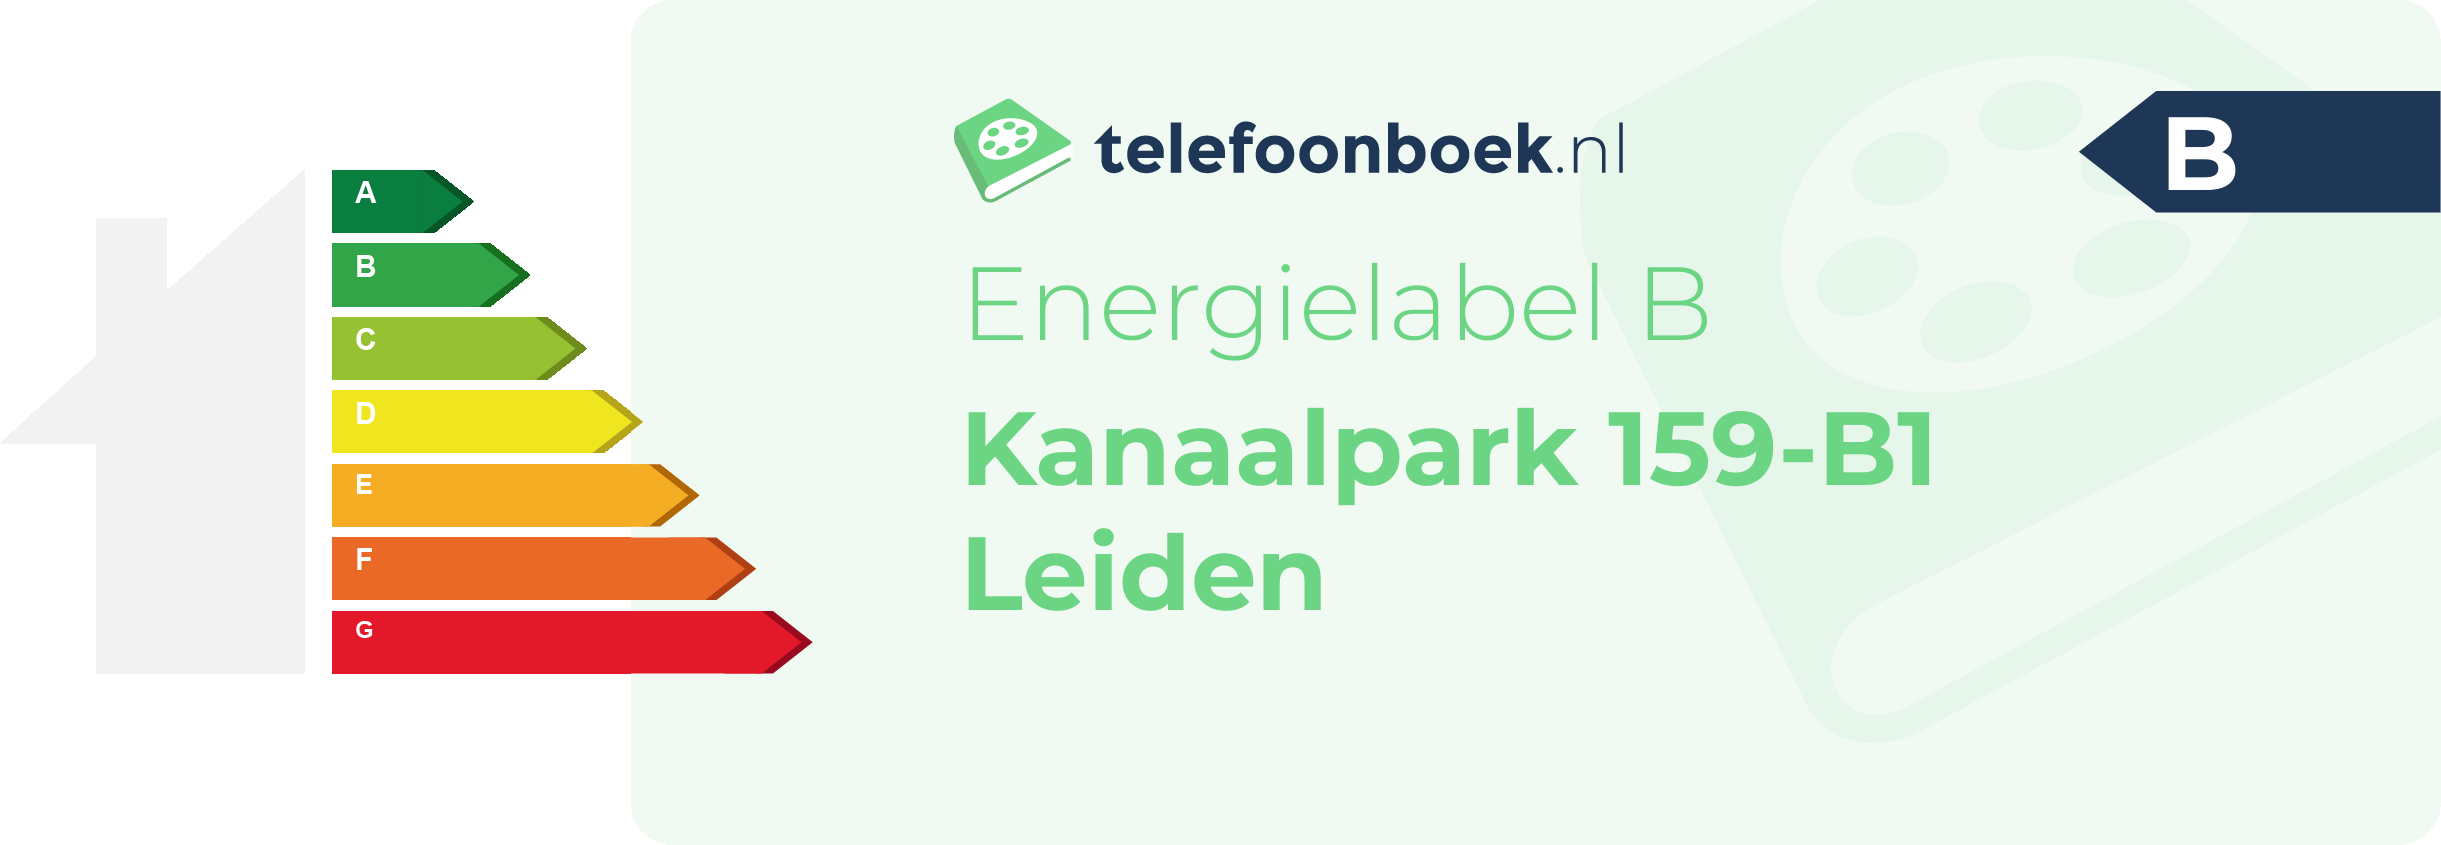 Energielabel Kanaalpark 159-B1 Leiden